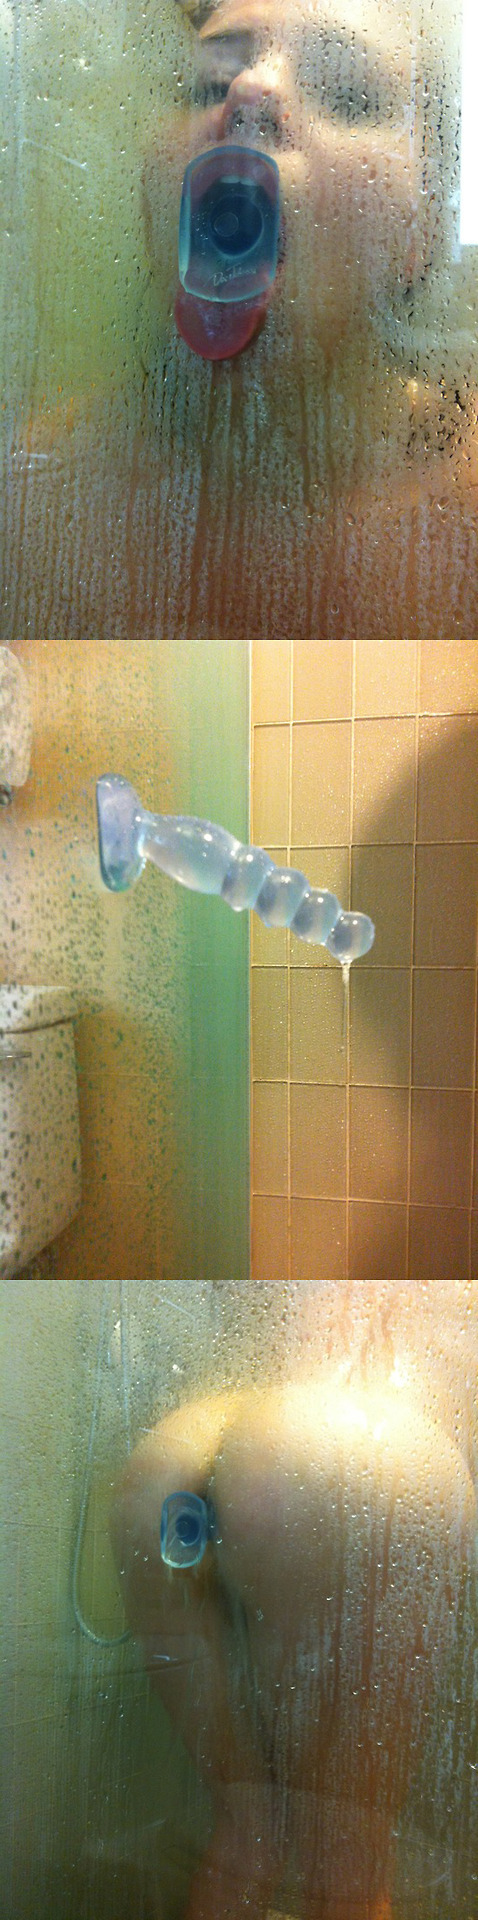 Shower suction dildo